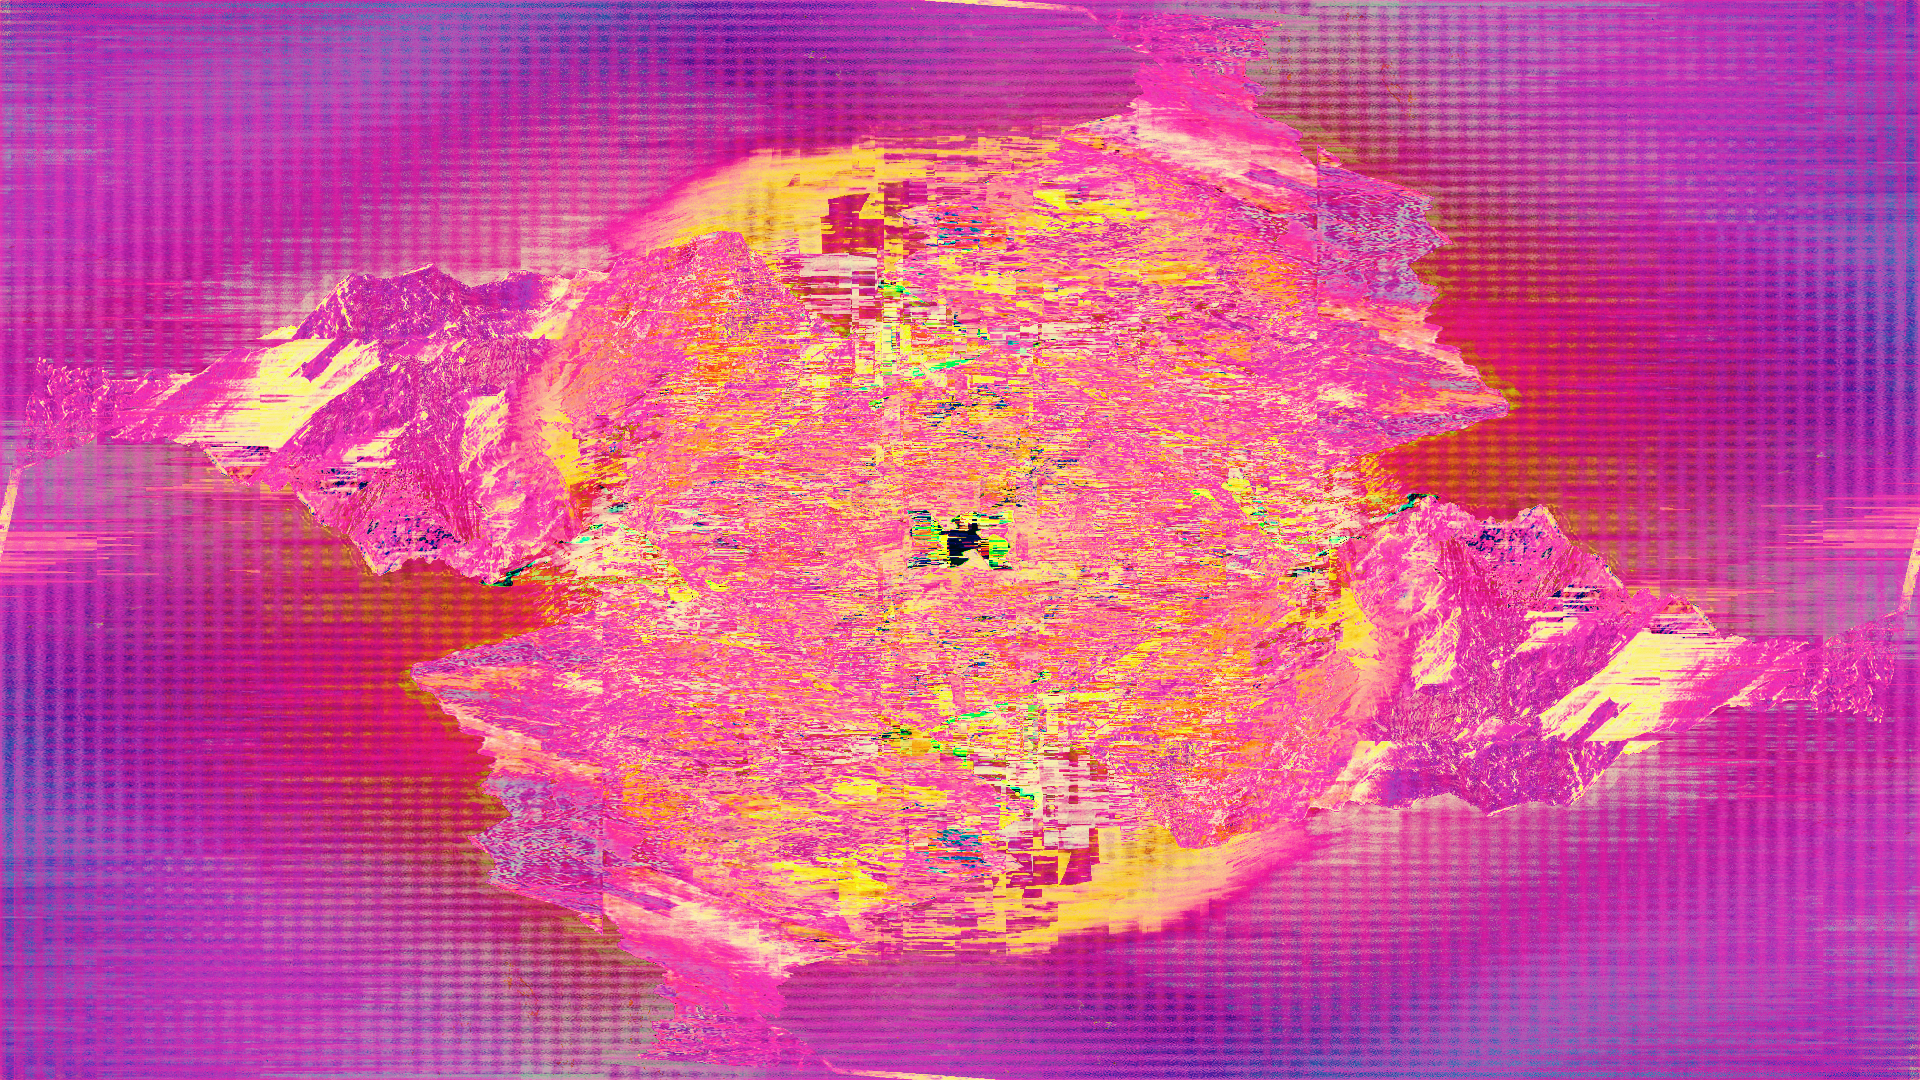 General 1920x1080 glitch art LSD abstract pink purple digital art